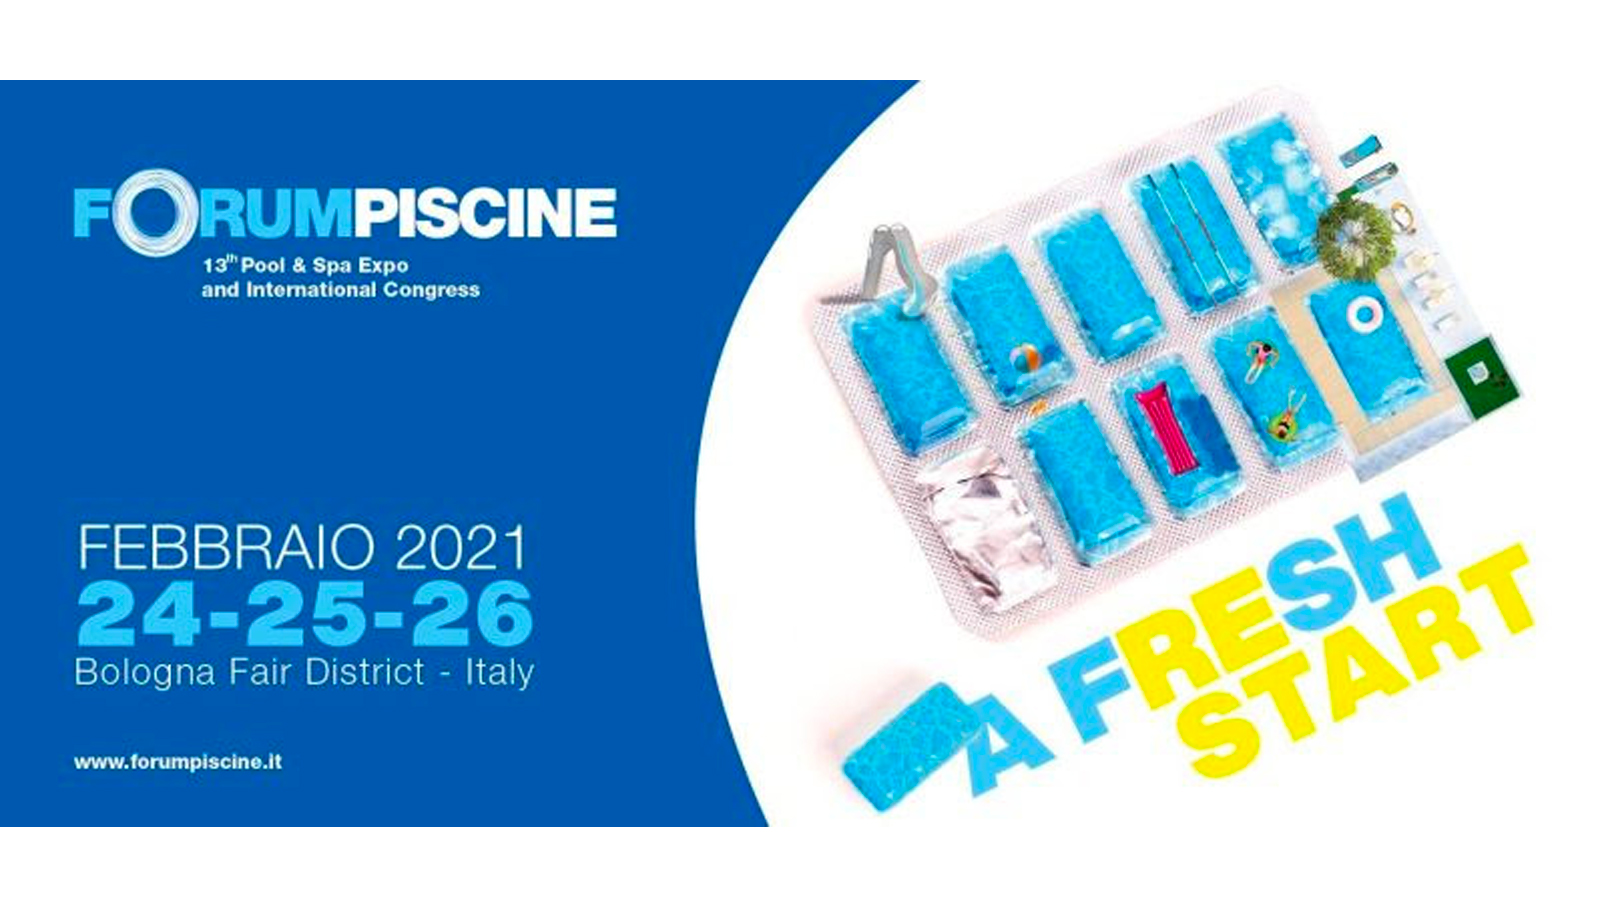 Forum Piscine 2021: area expo, live show e congresso internazionale